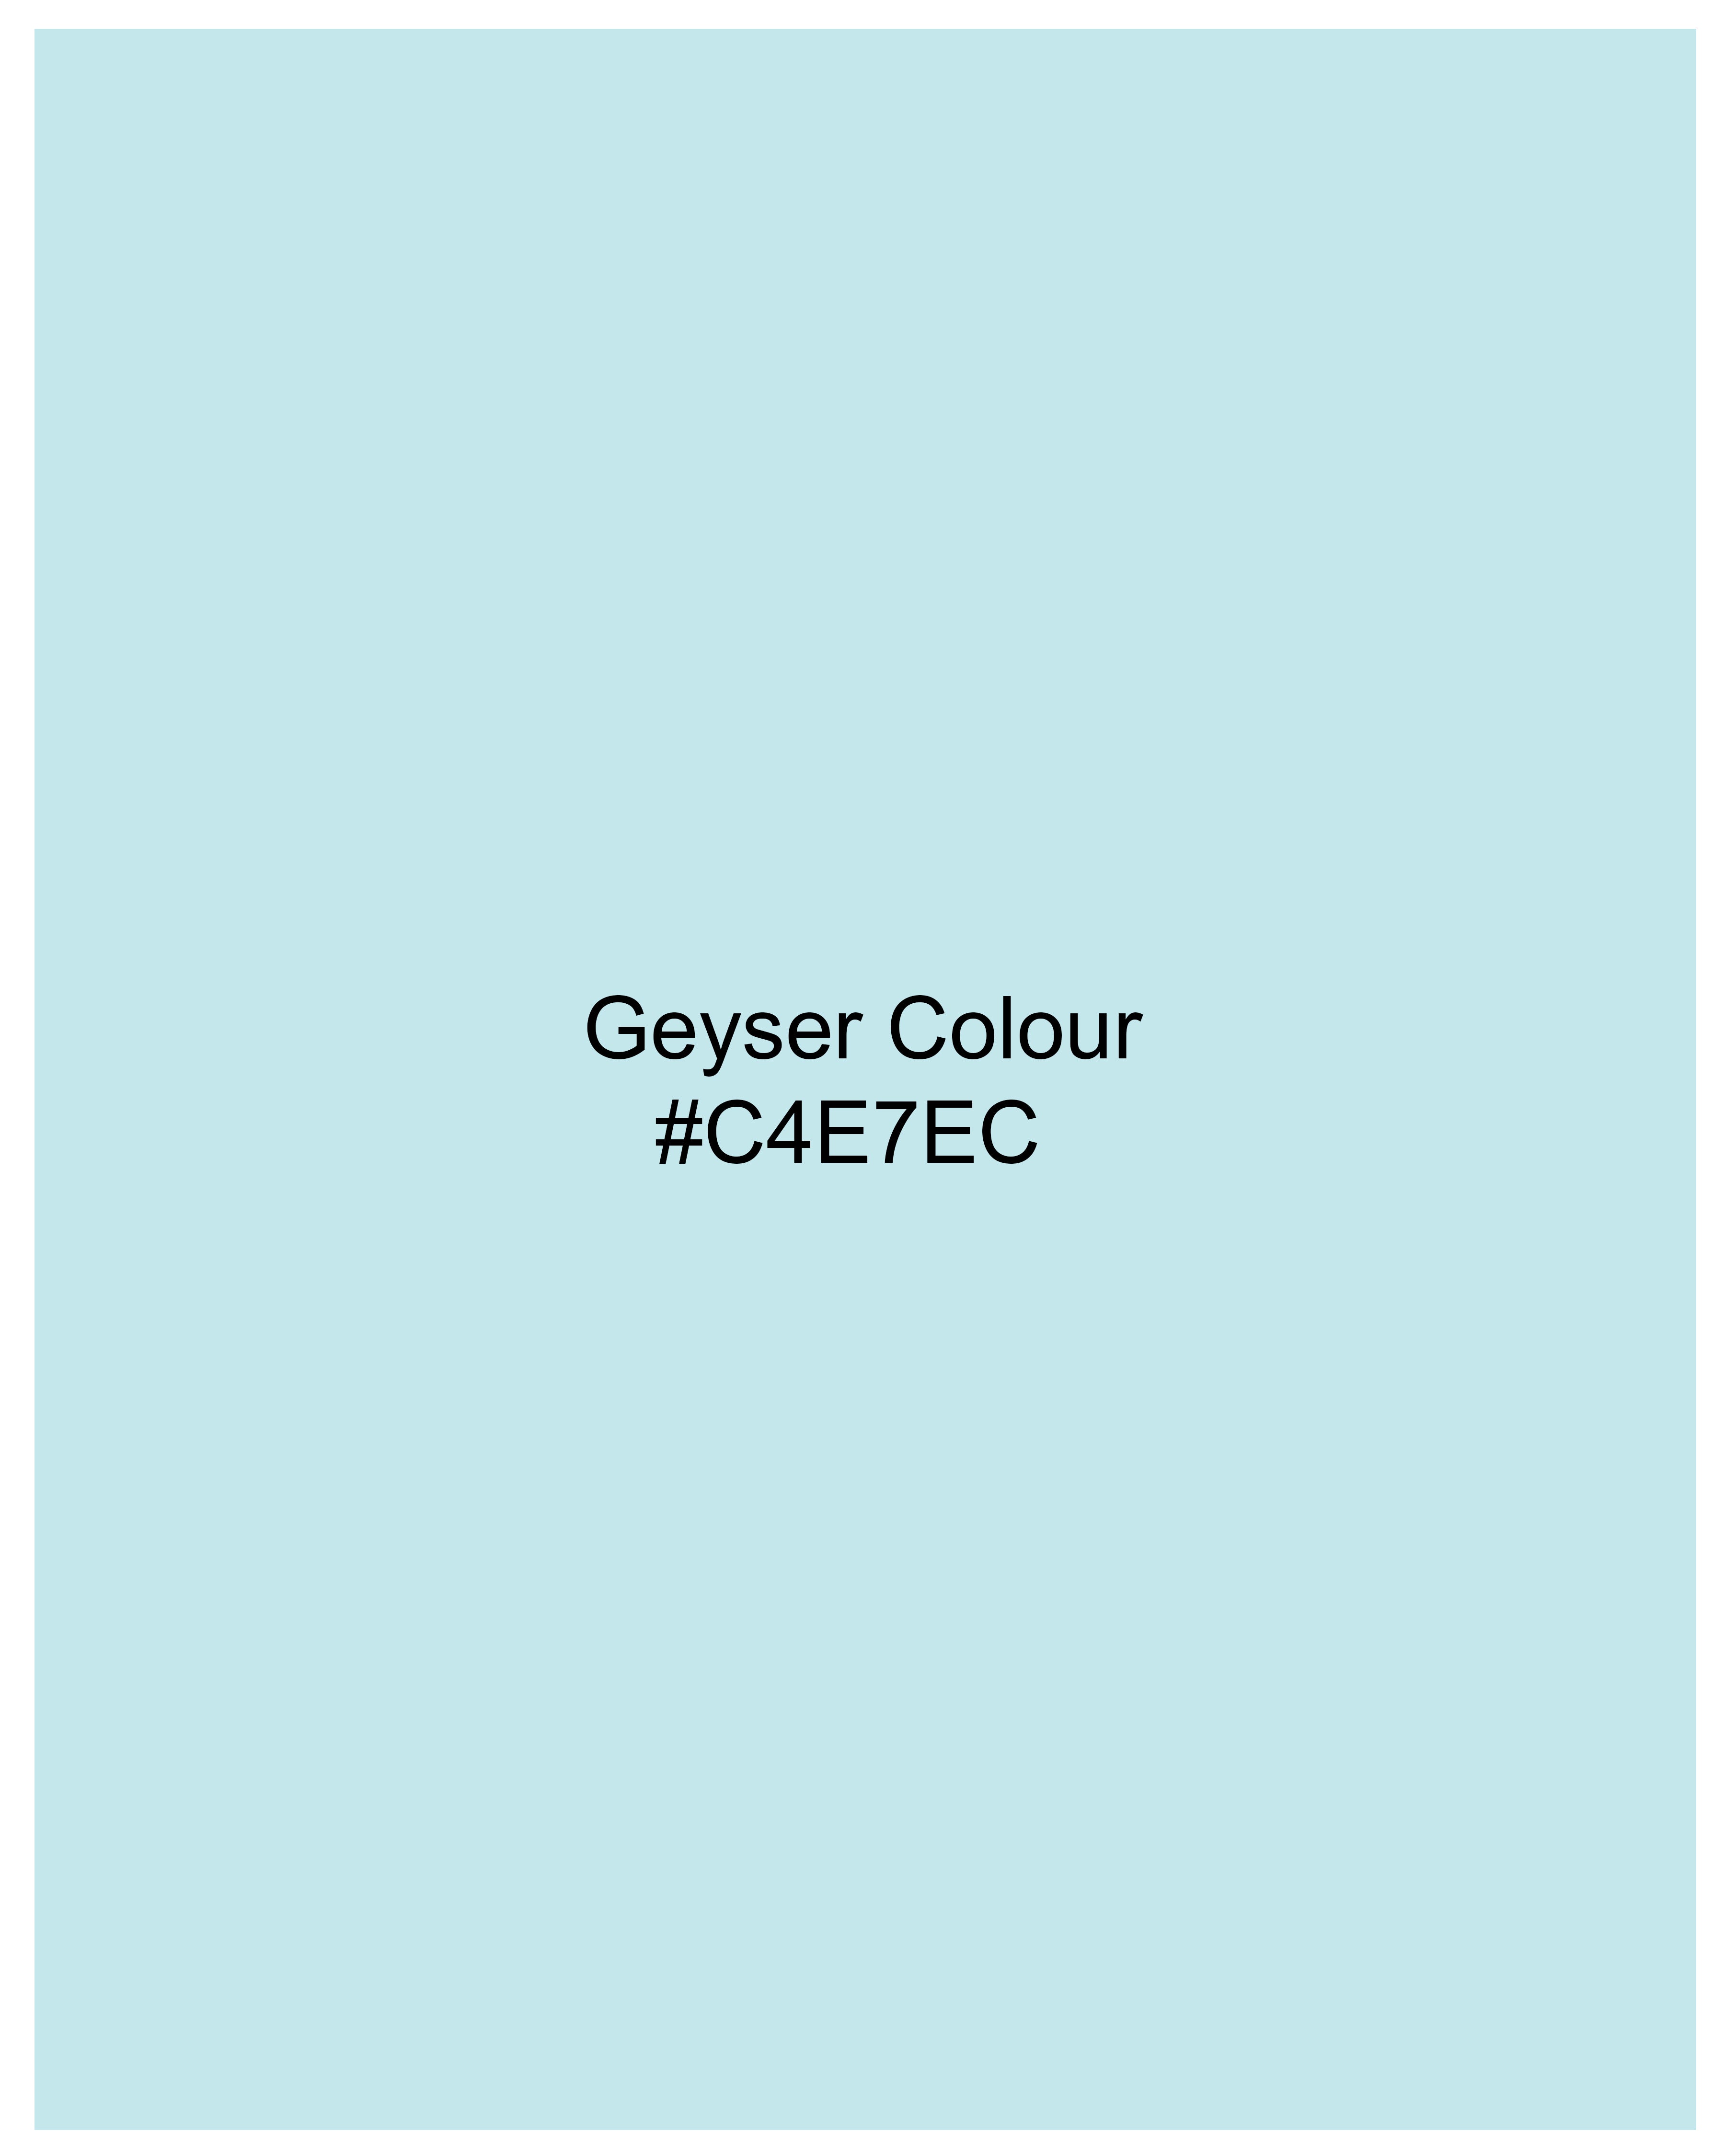 Geyser Blue Dobby Textured Premium Giza Cotton Shirt 9836-CA-CP-38, 9836-CA-CP-H-38, 9836-CA-CP-39, 9836-CA-CP-H-39, 9836-CA-CP-40, 9836-CA-CP-H-40, 9836-CA-CP-42, 9836-CA-CP-H-42, 9836-CA-CP-44, 9836-CA-CP-H-44, 9836-CA-CP-46, 9836-CA-CP-H-46, 9836-CA-CP-48, 9836-CA-CP-H-48, 9836-CA-CP-50, 9836-CA-CP-H-50, 9836-CA-CP-52, 9836-CA-CP-H-52